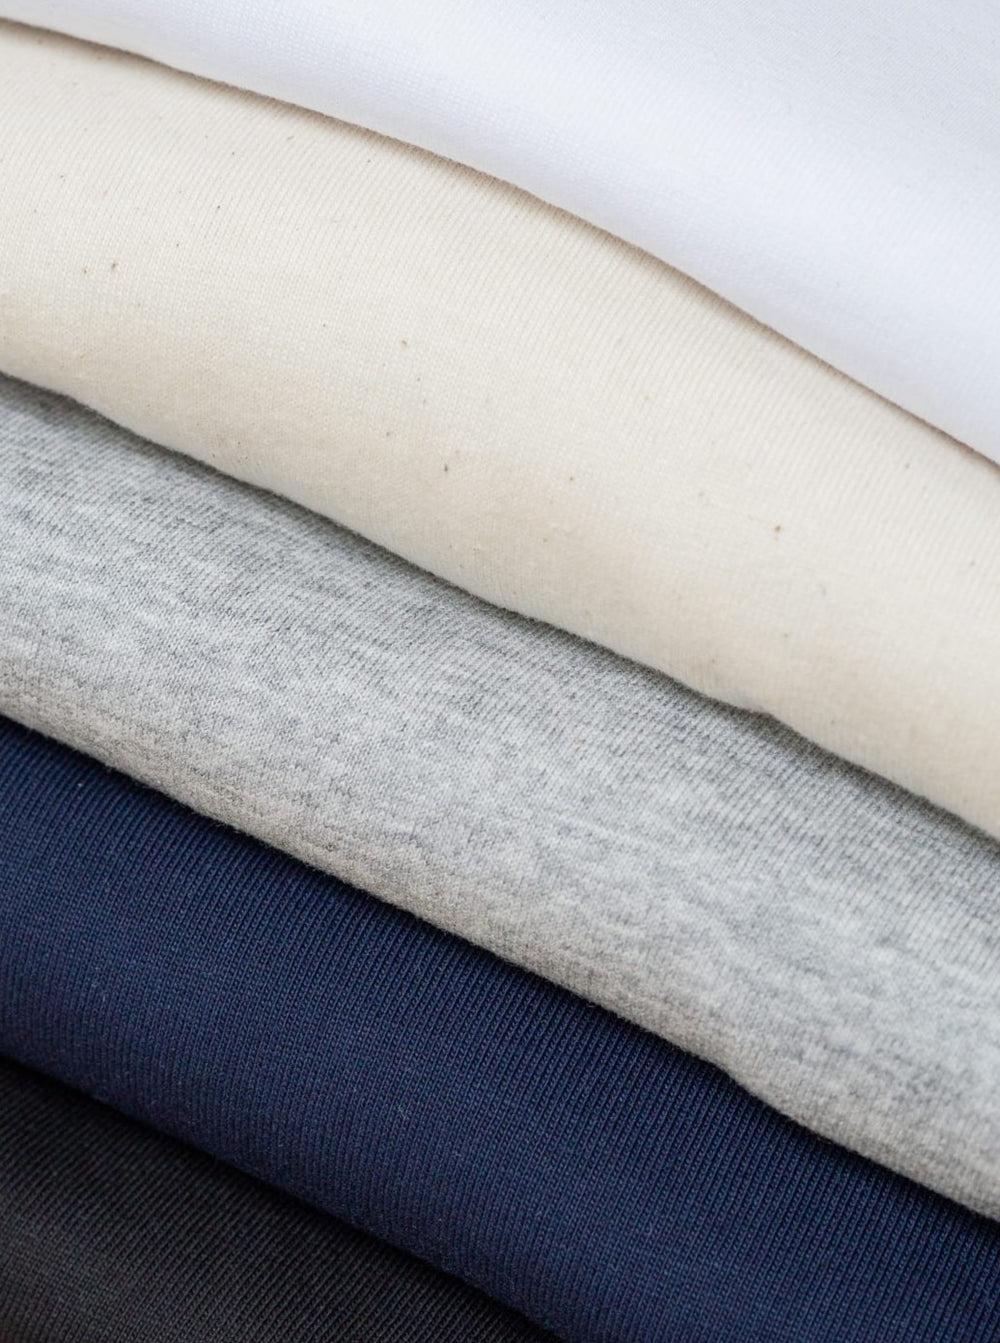 Pack an nachhaltigen Basic T-Shirt in verschiedenen Farben aus 100% Biobaumwolle von FUXBAU.